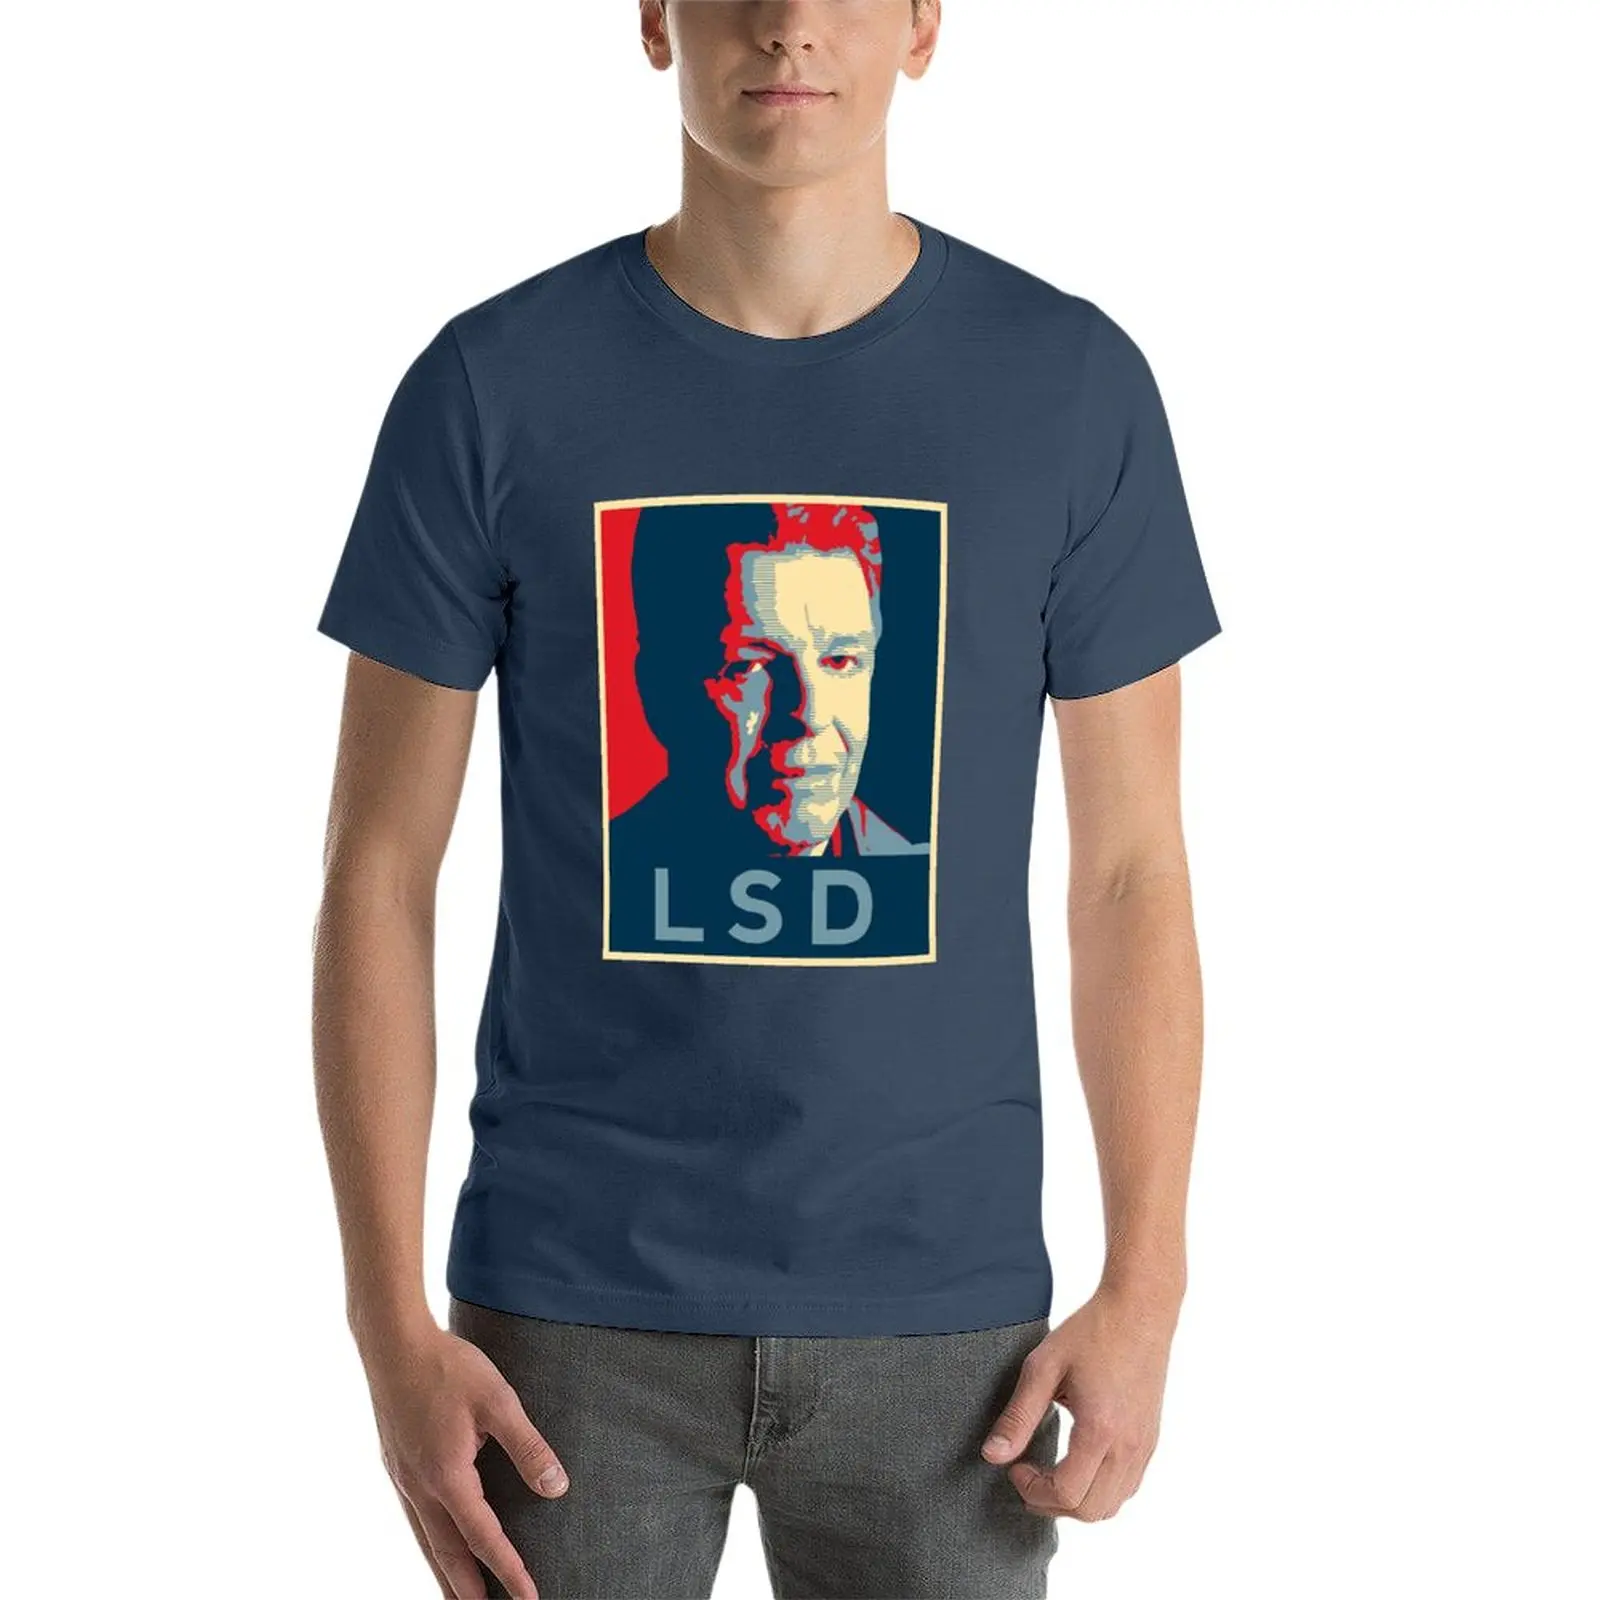 Camiseta con póster LSD para hombre, tops bonitos de gran tamaño, ropa